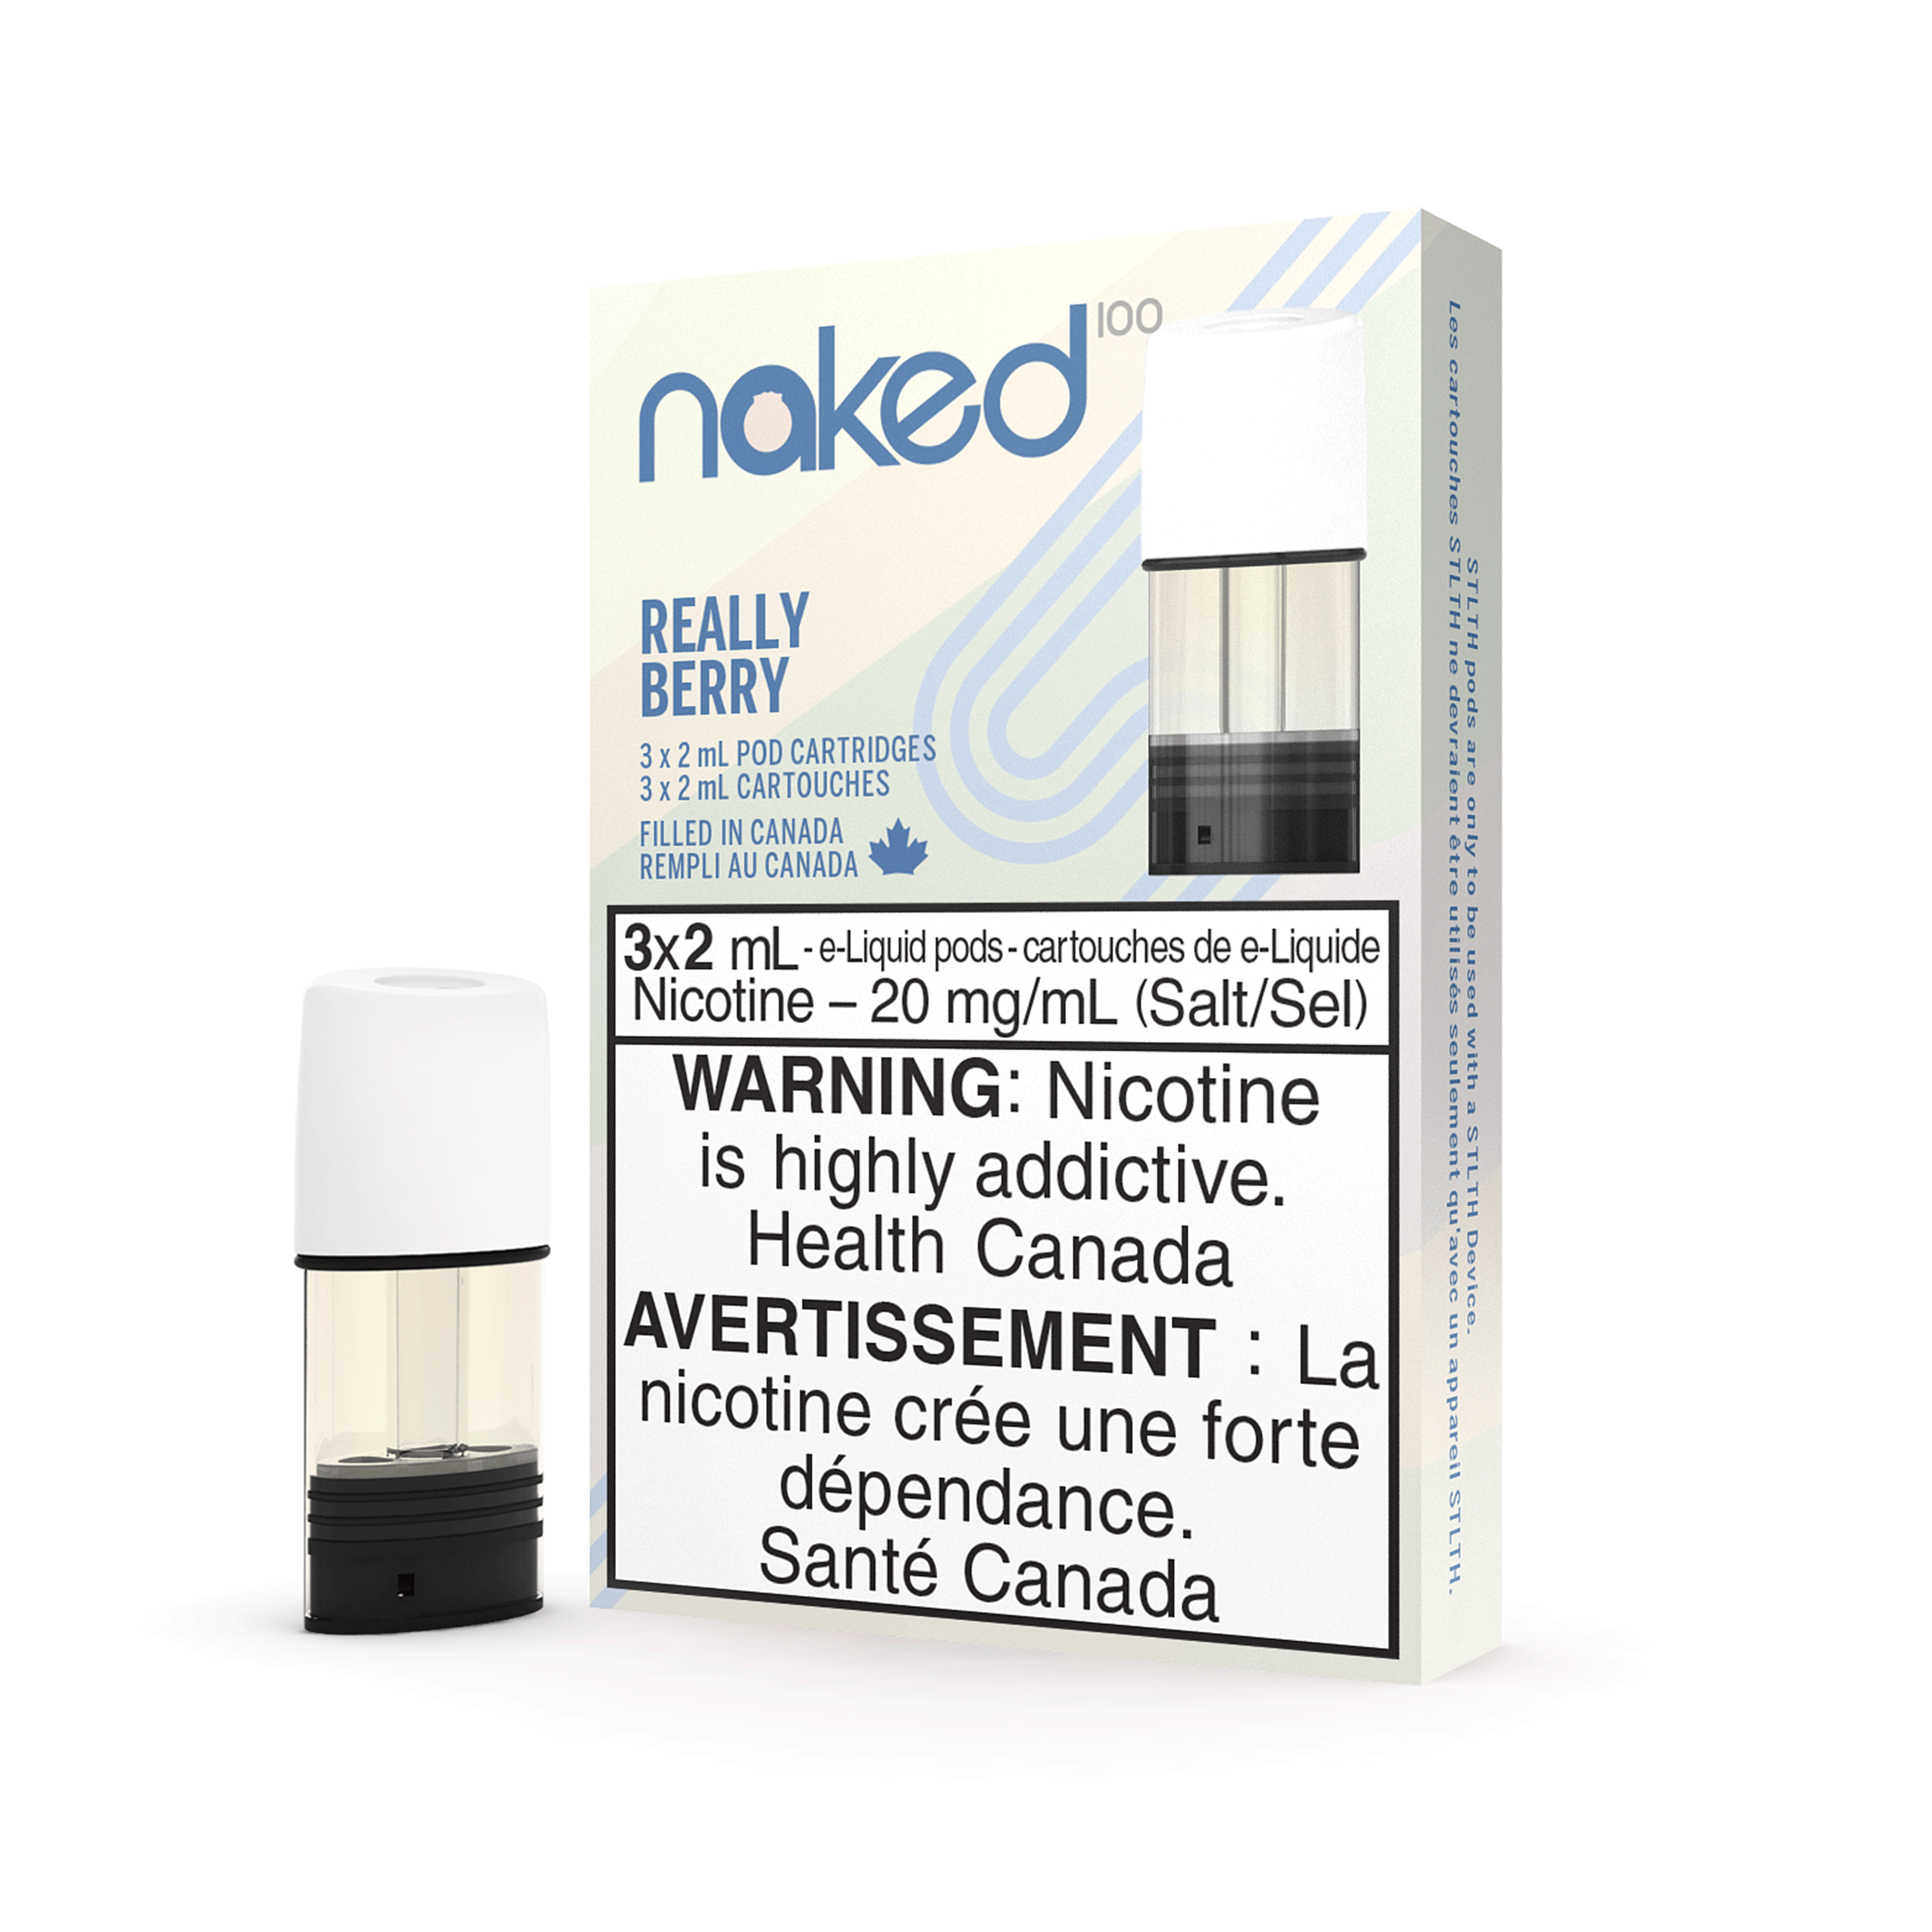 STLTH Naked 100 Vape Pod - Really Berry available on Canada online vape shop